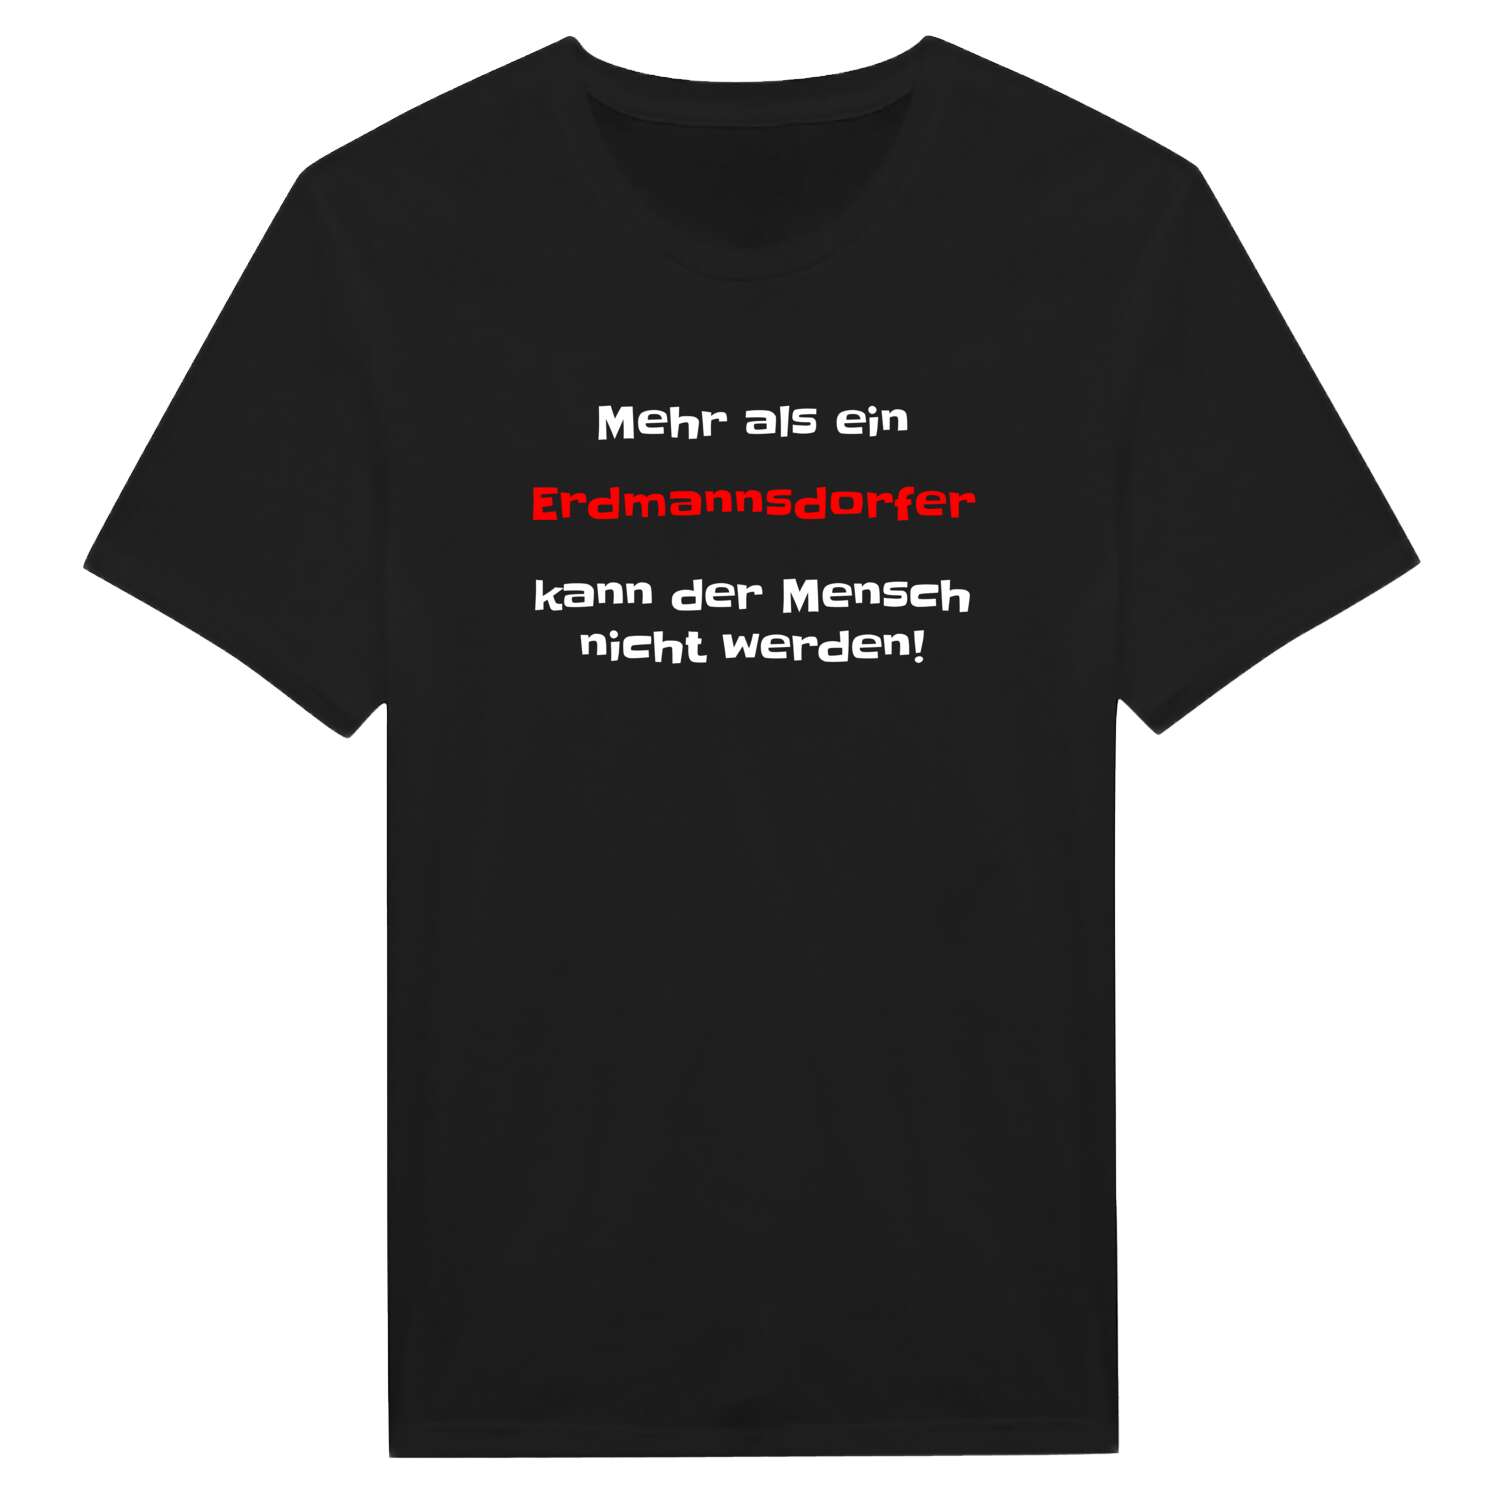 Erdmannsdorf T-Shirt »Mehr als ein«